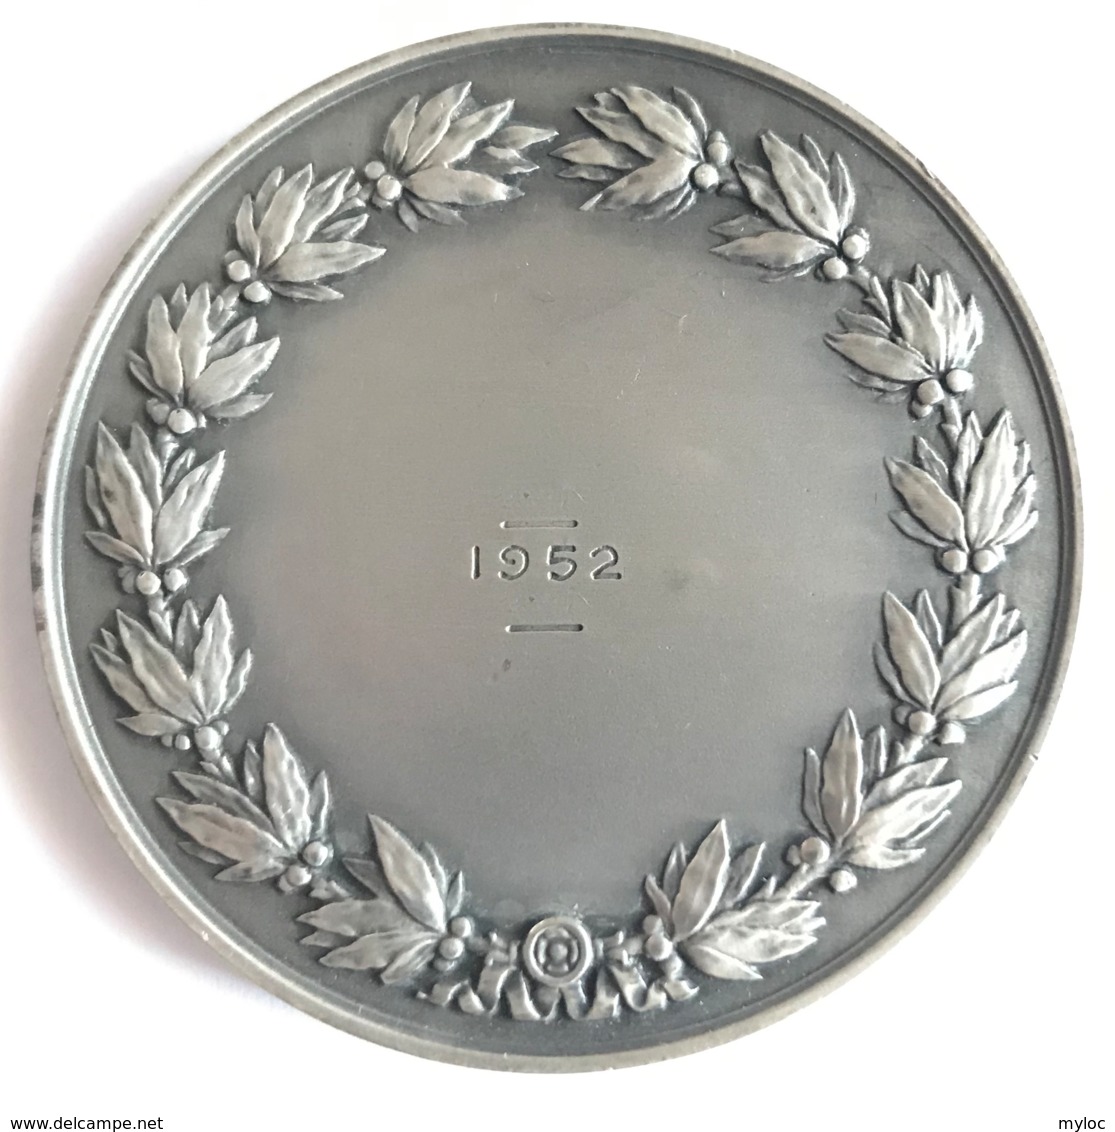 Médaille Assurances Compagnies Du Soleil. R.B. Baron. 1952. Poinçon 1 Argent. Diam. 50mm - 65gr - Profesionales / De Sociedad